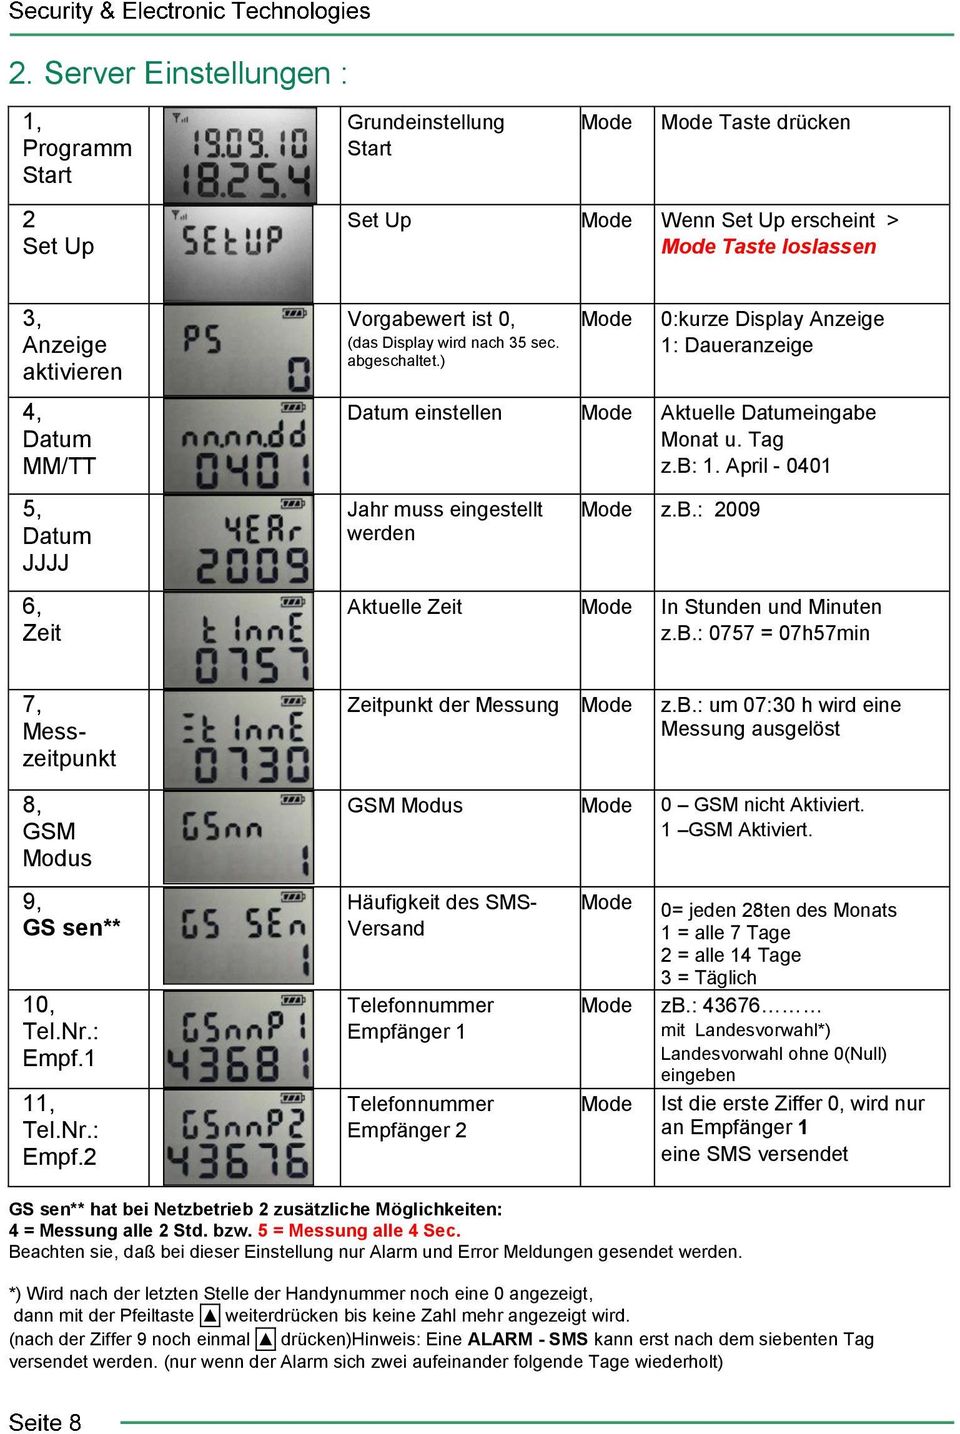 Tag z.b: 1. April - 0401 z.b.: 2009 In Stunden und Minuten z.b.: 0757 = 07h57min 7, Messzeitpunkt Zeitpunkt der Messung z.b.: um 07:30 h wird eine Messung ausgelöst 8, GSM Modus 9, GS sen** 10, Tel.